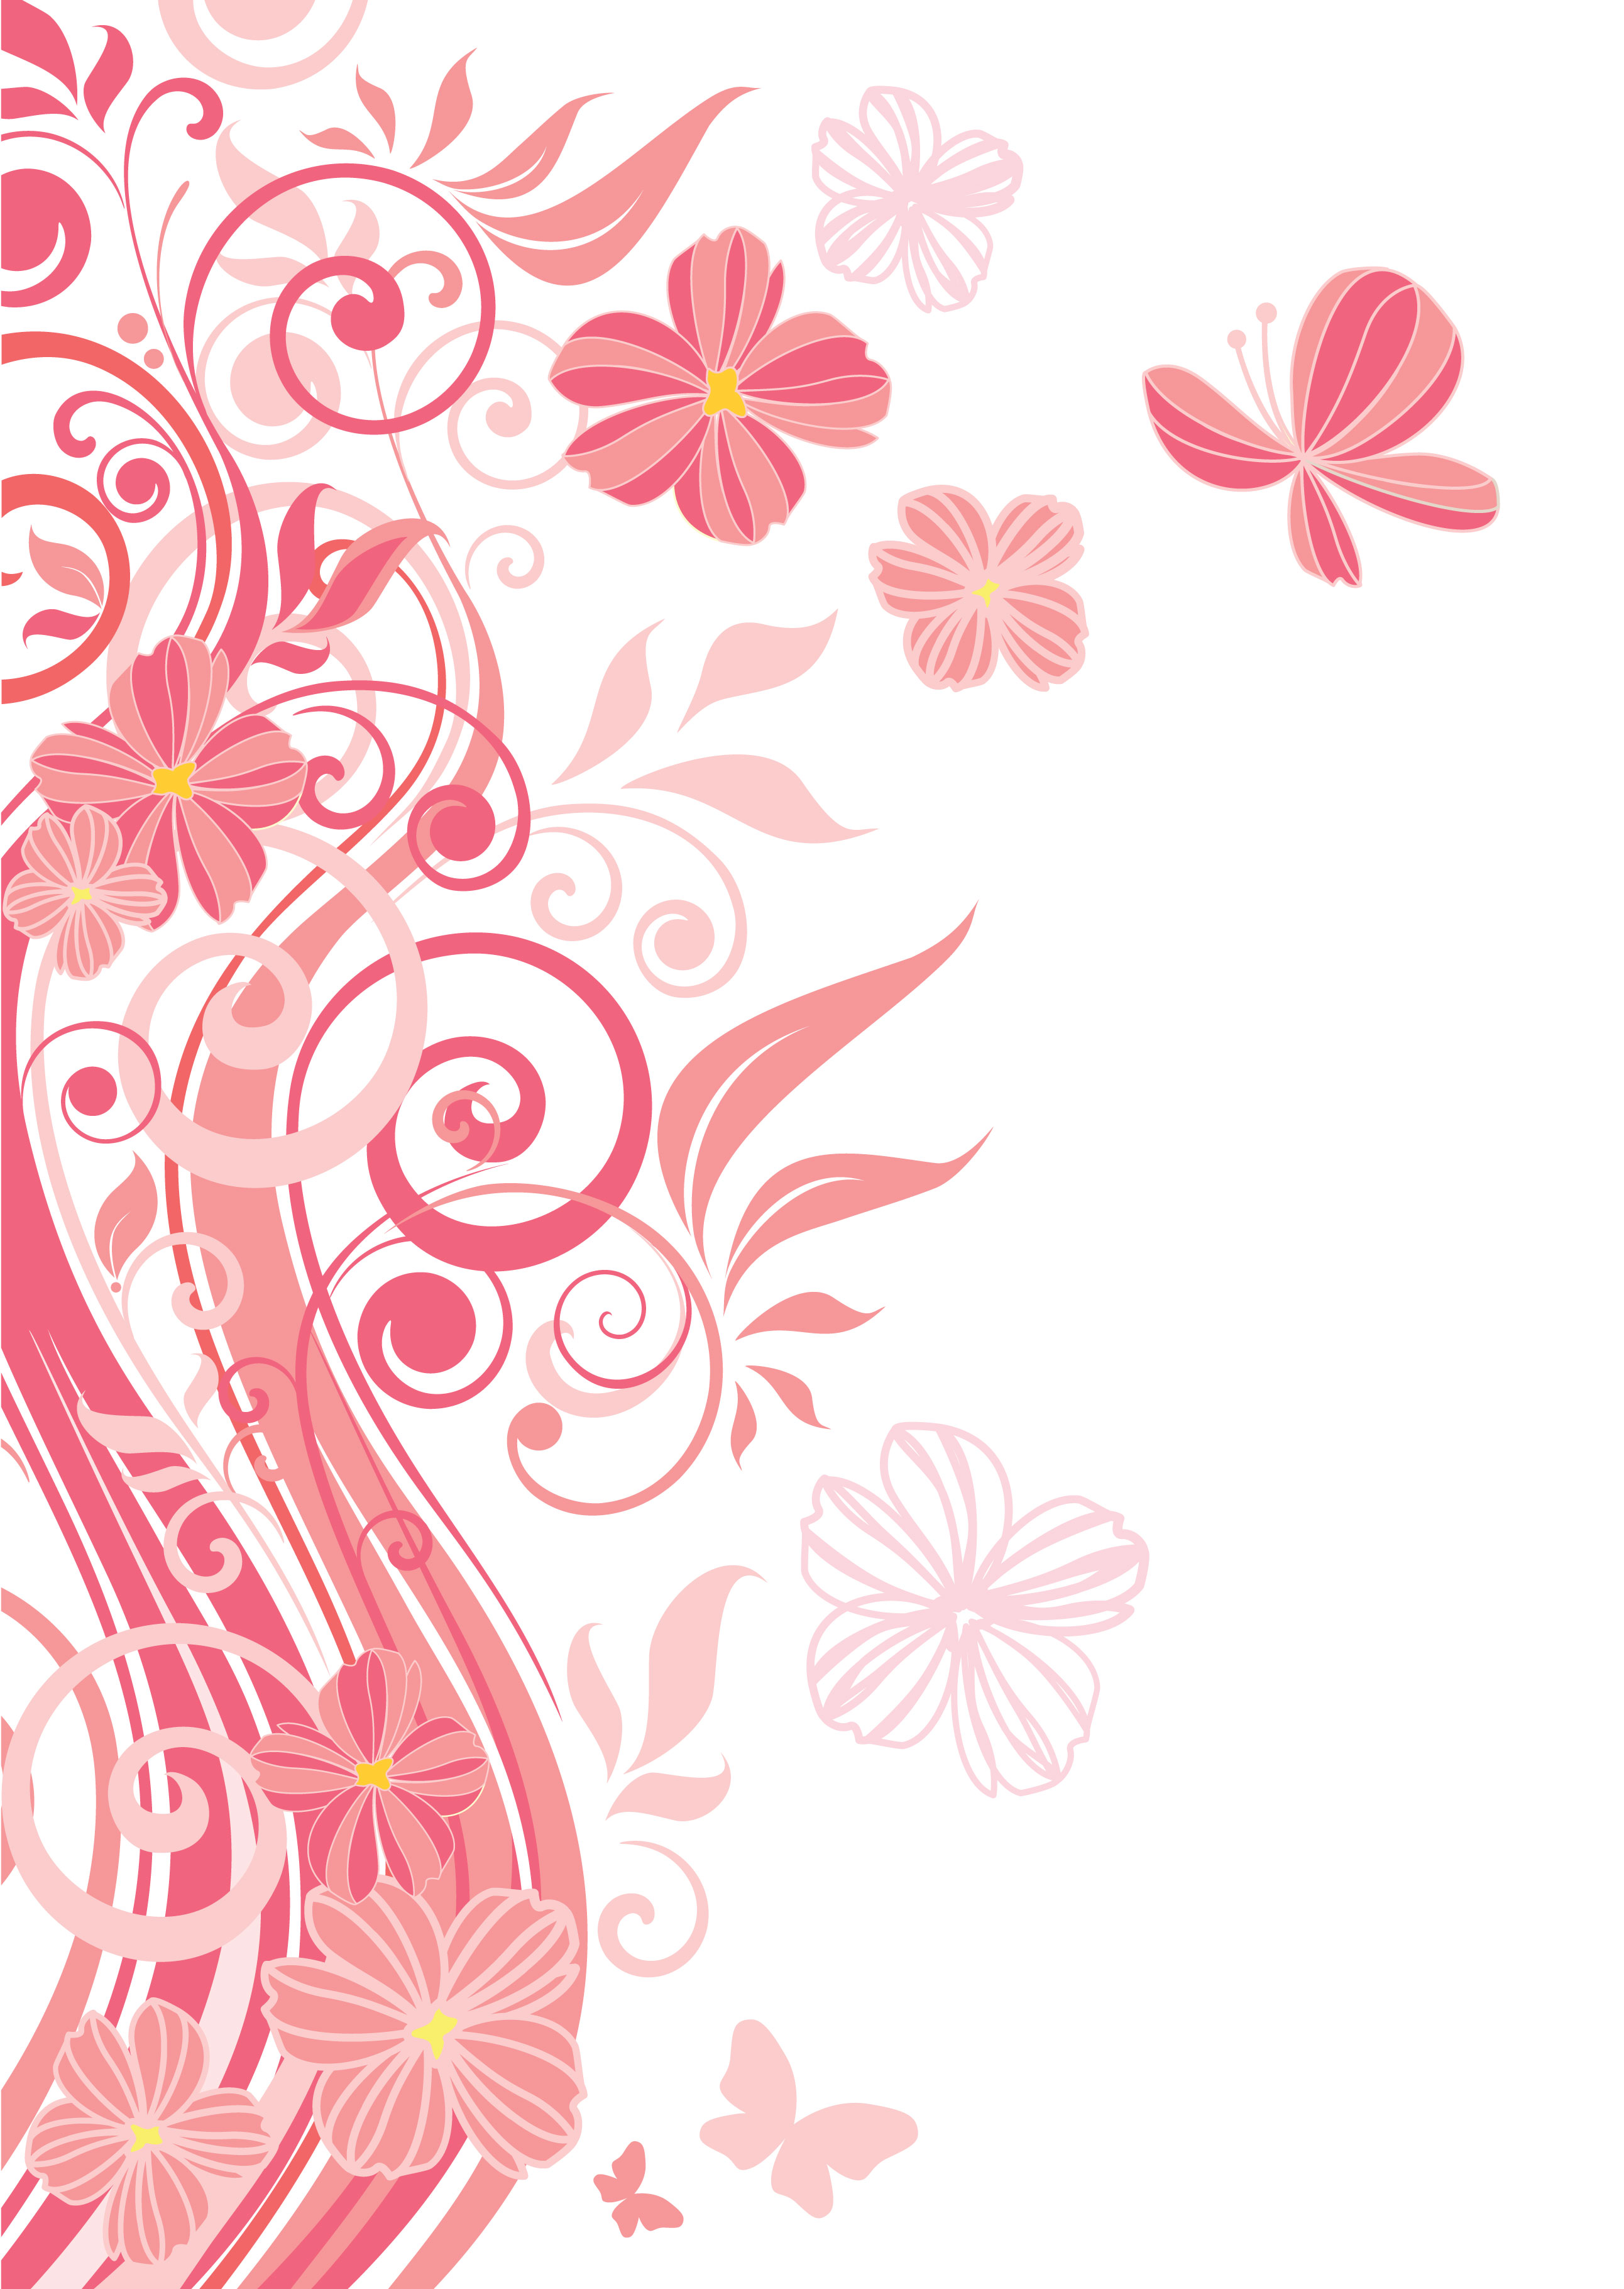 ピンクの花のイラスト フリー素材 壁紙 背景no 712 ピンク 茎葉 蝶